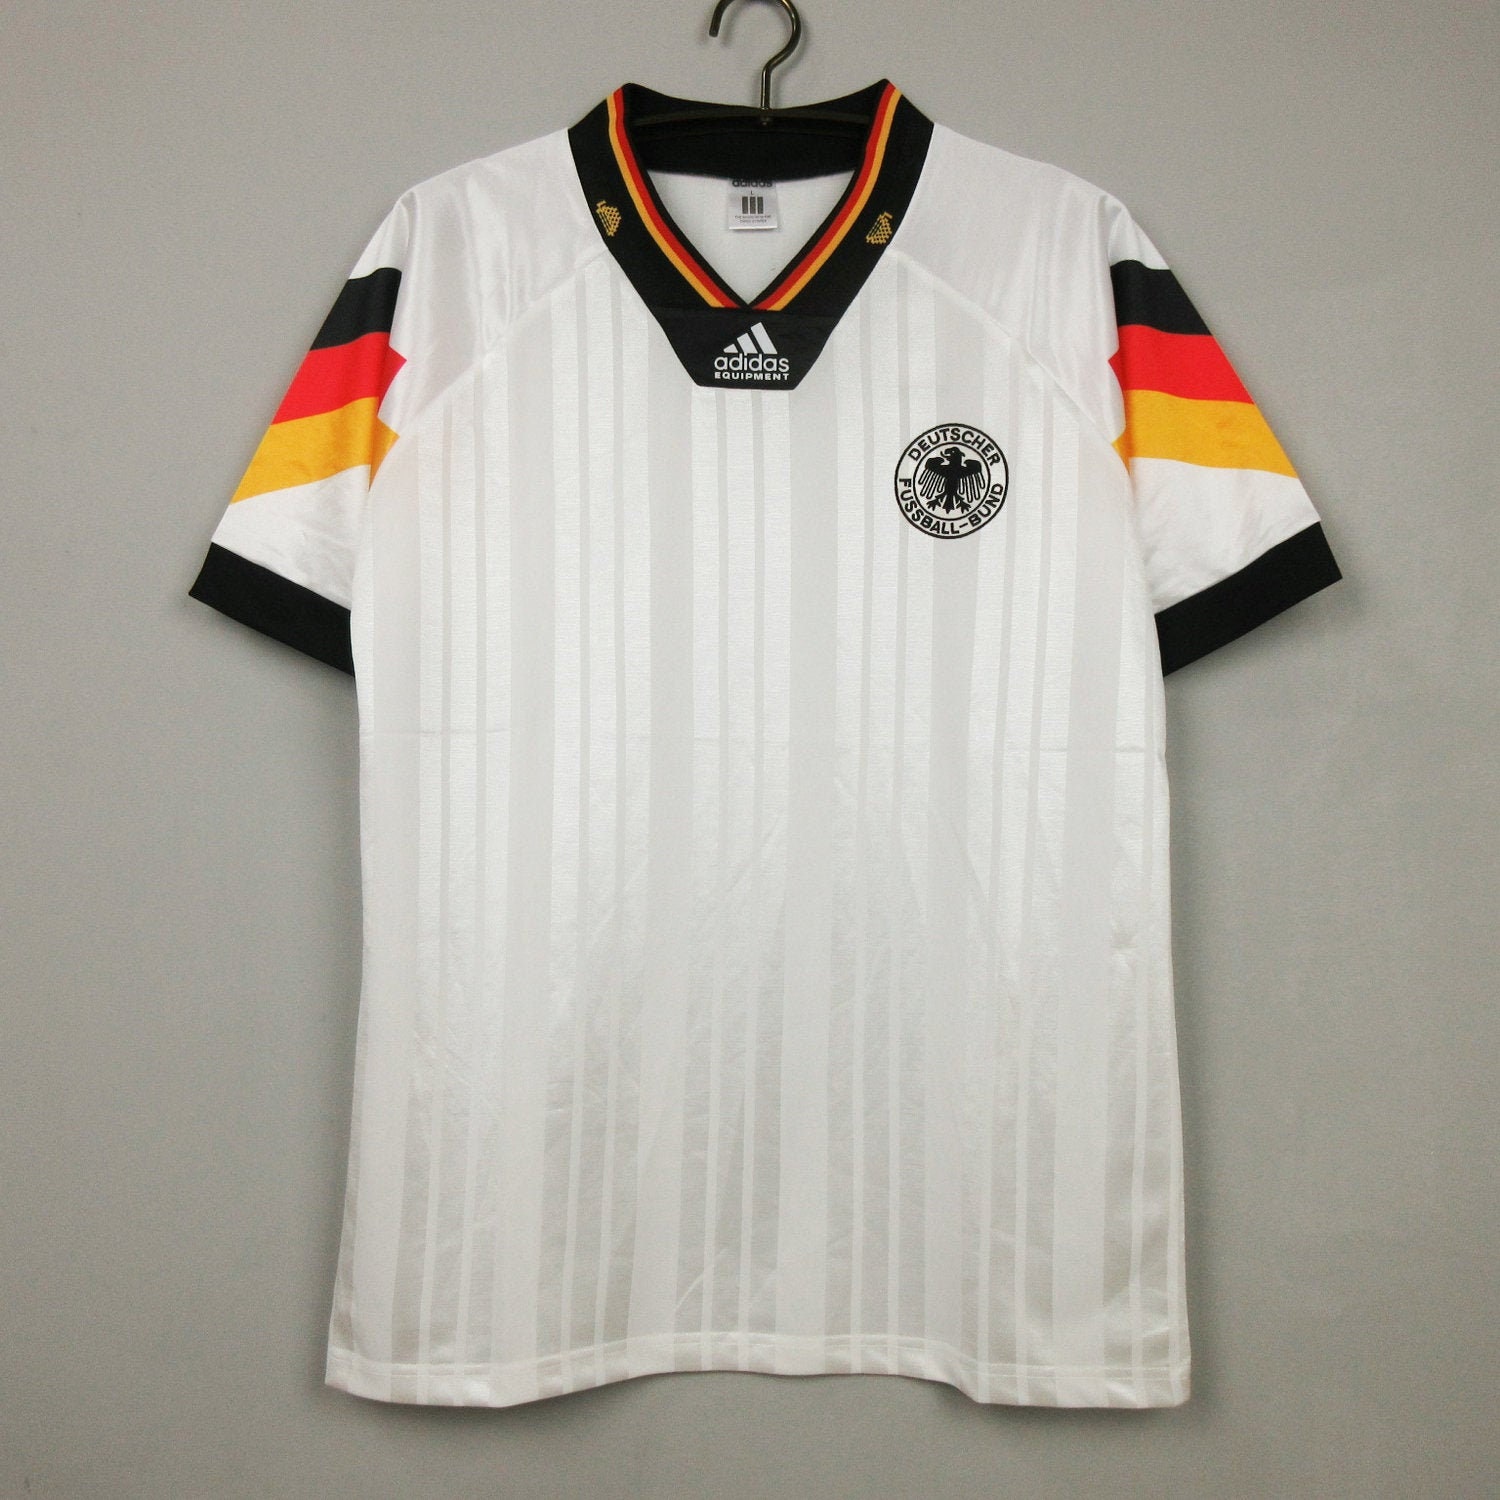 Germany 1992 Retro Jersey Home Shirt | Etsy